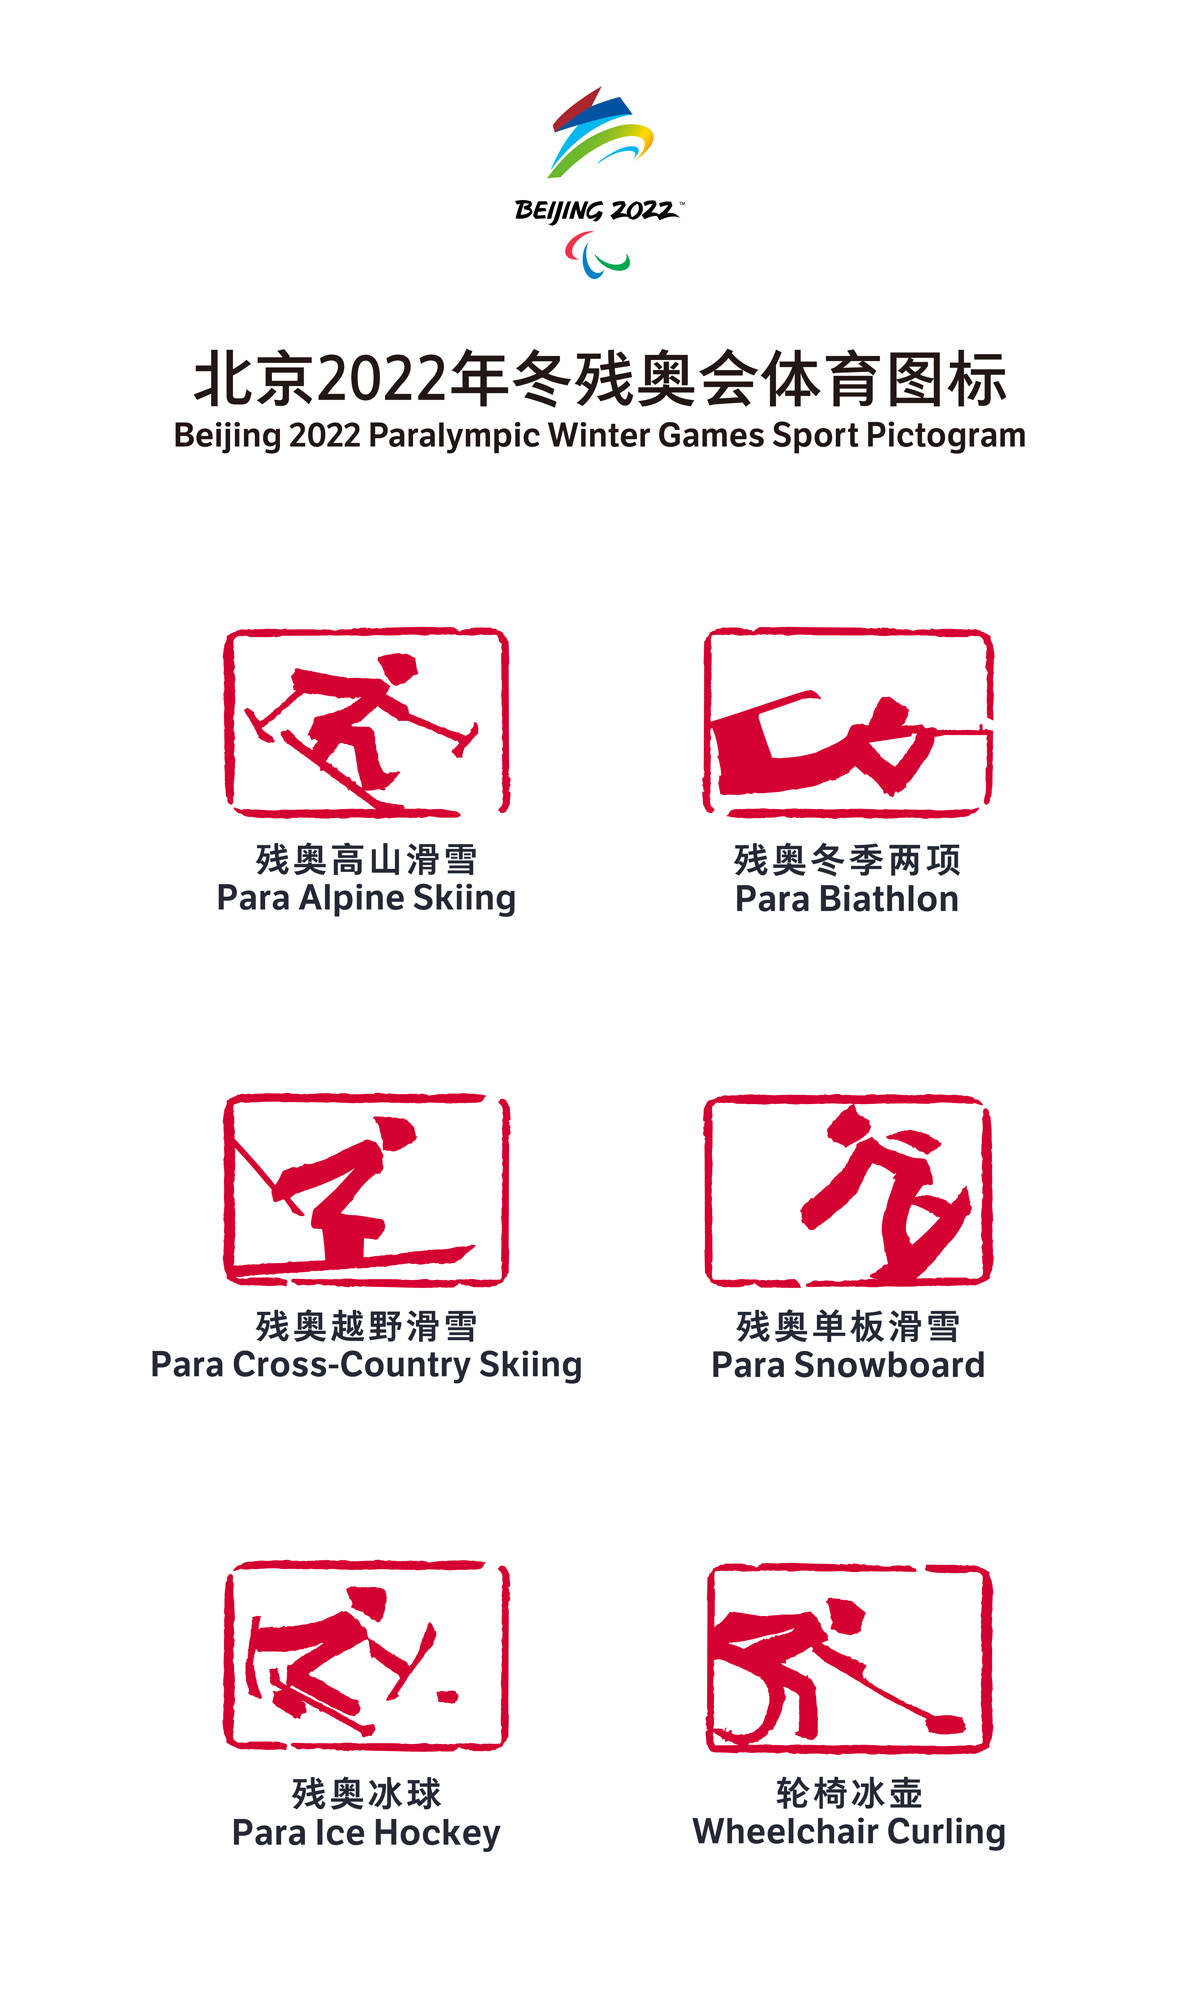 以汉字为灵感来源北京2022年冬奥会和冬残奥会体育图标发布